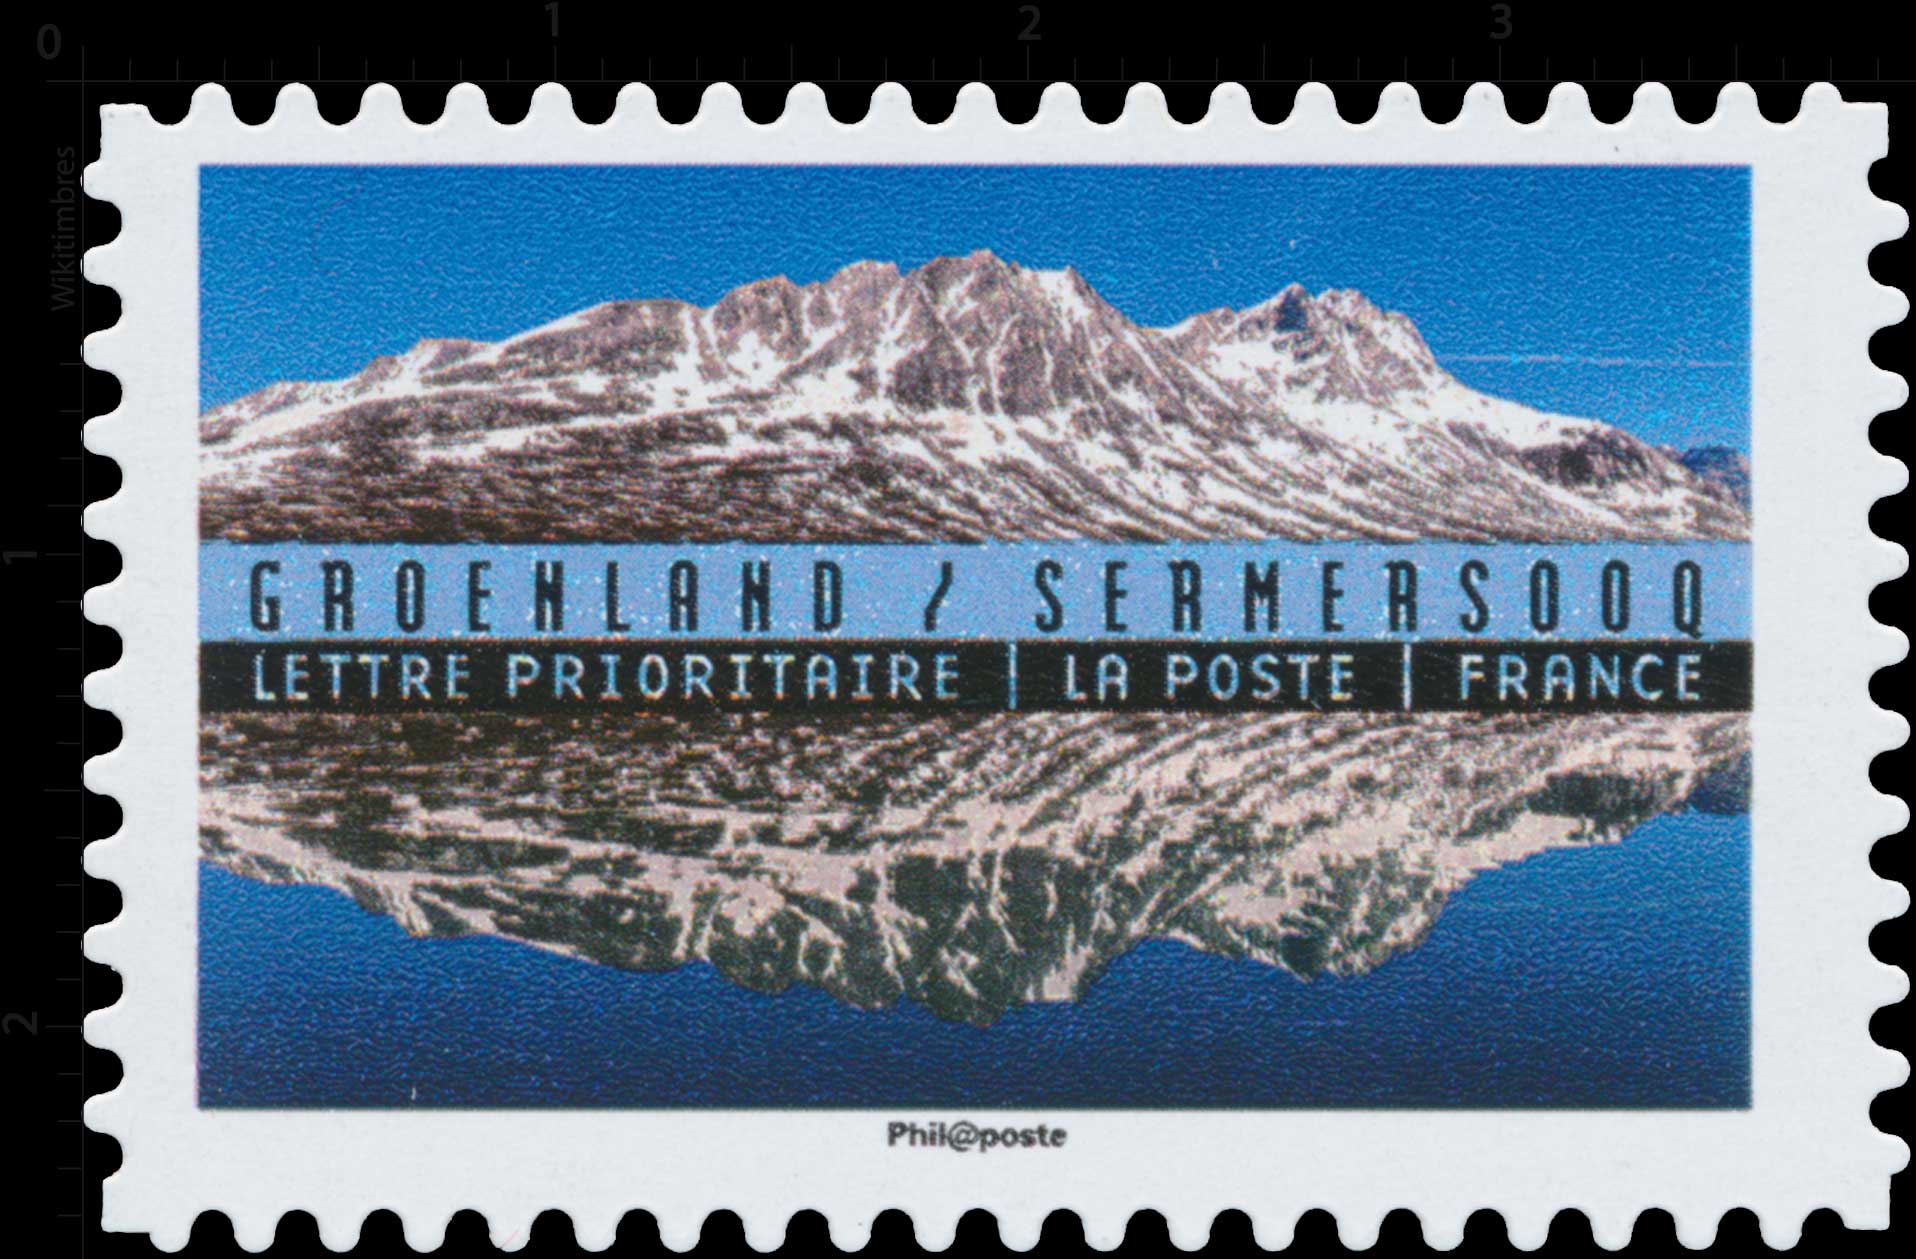 2017 Groenland / Sermersooq